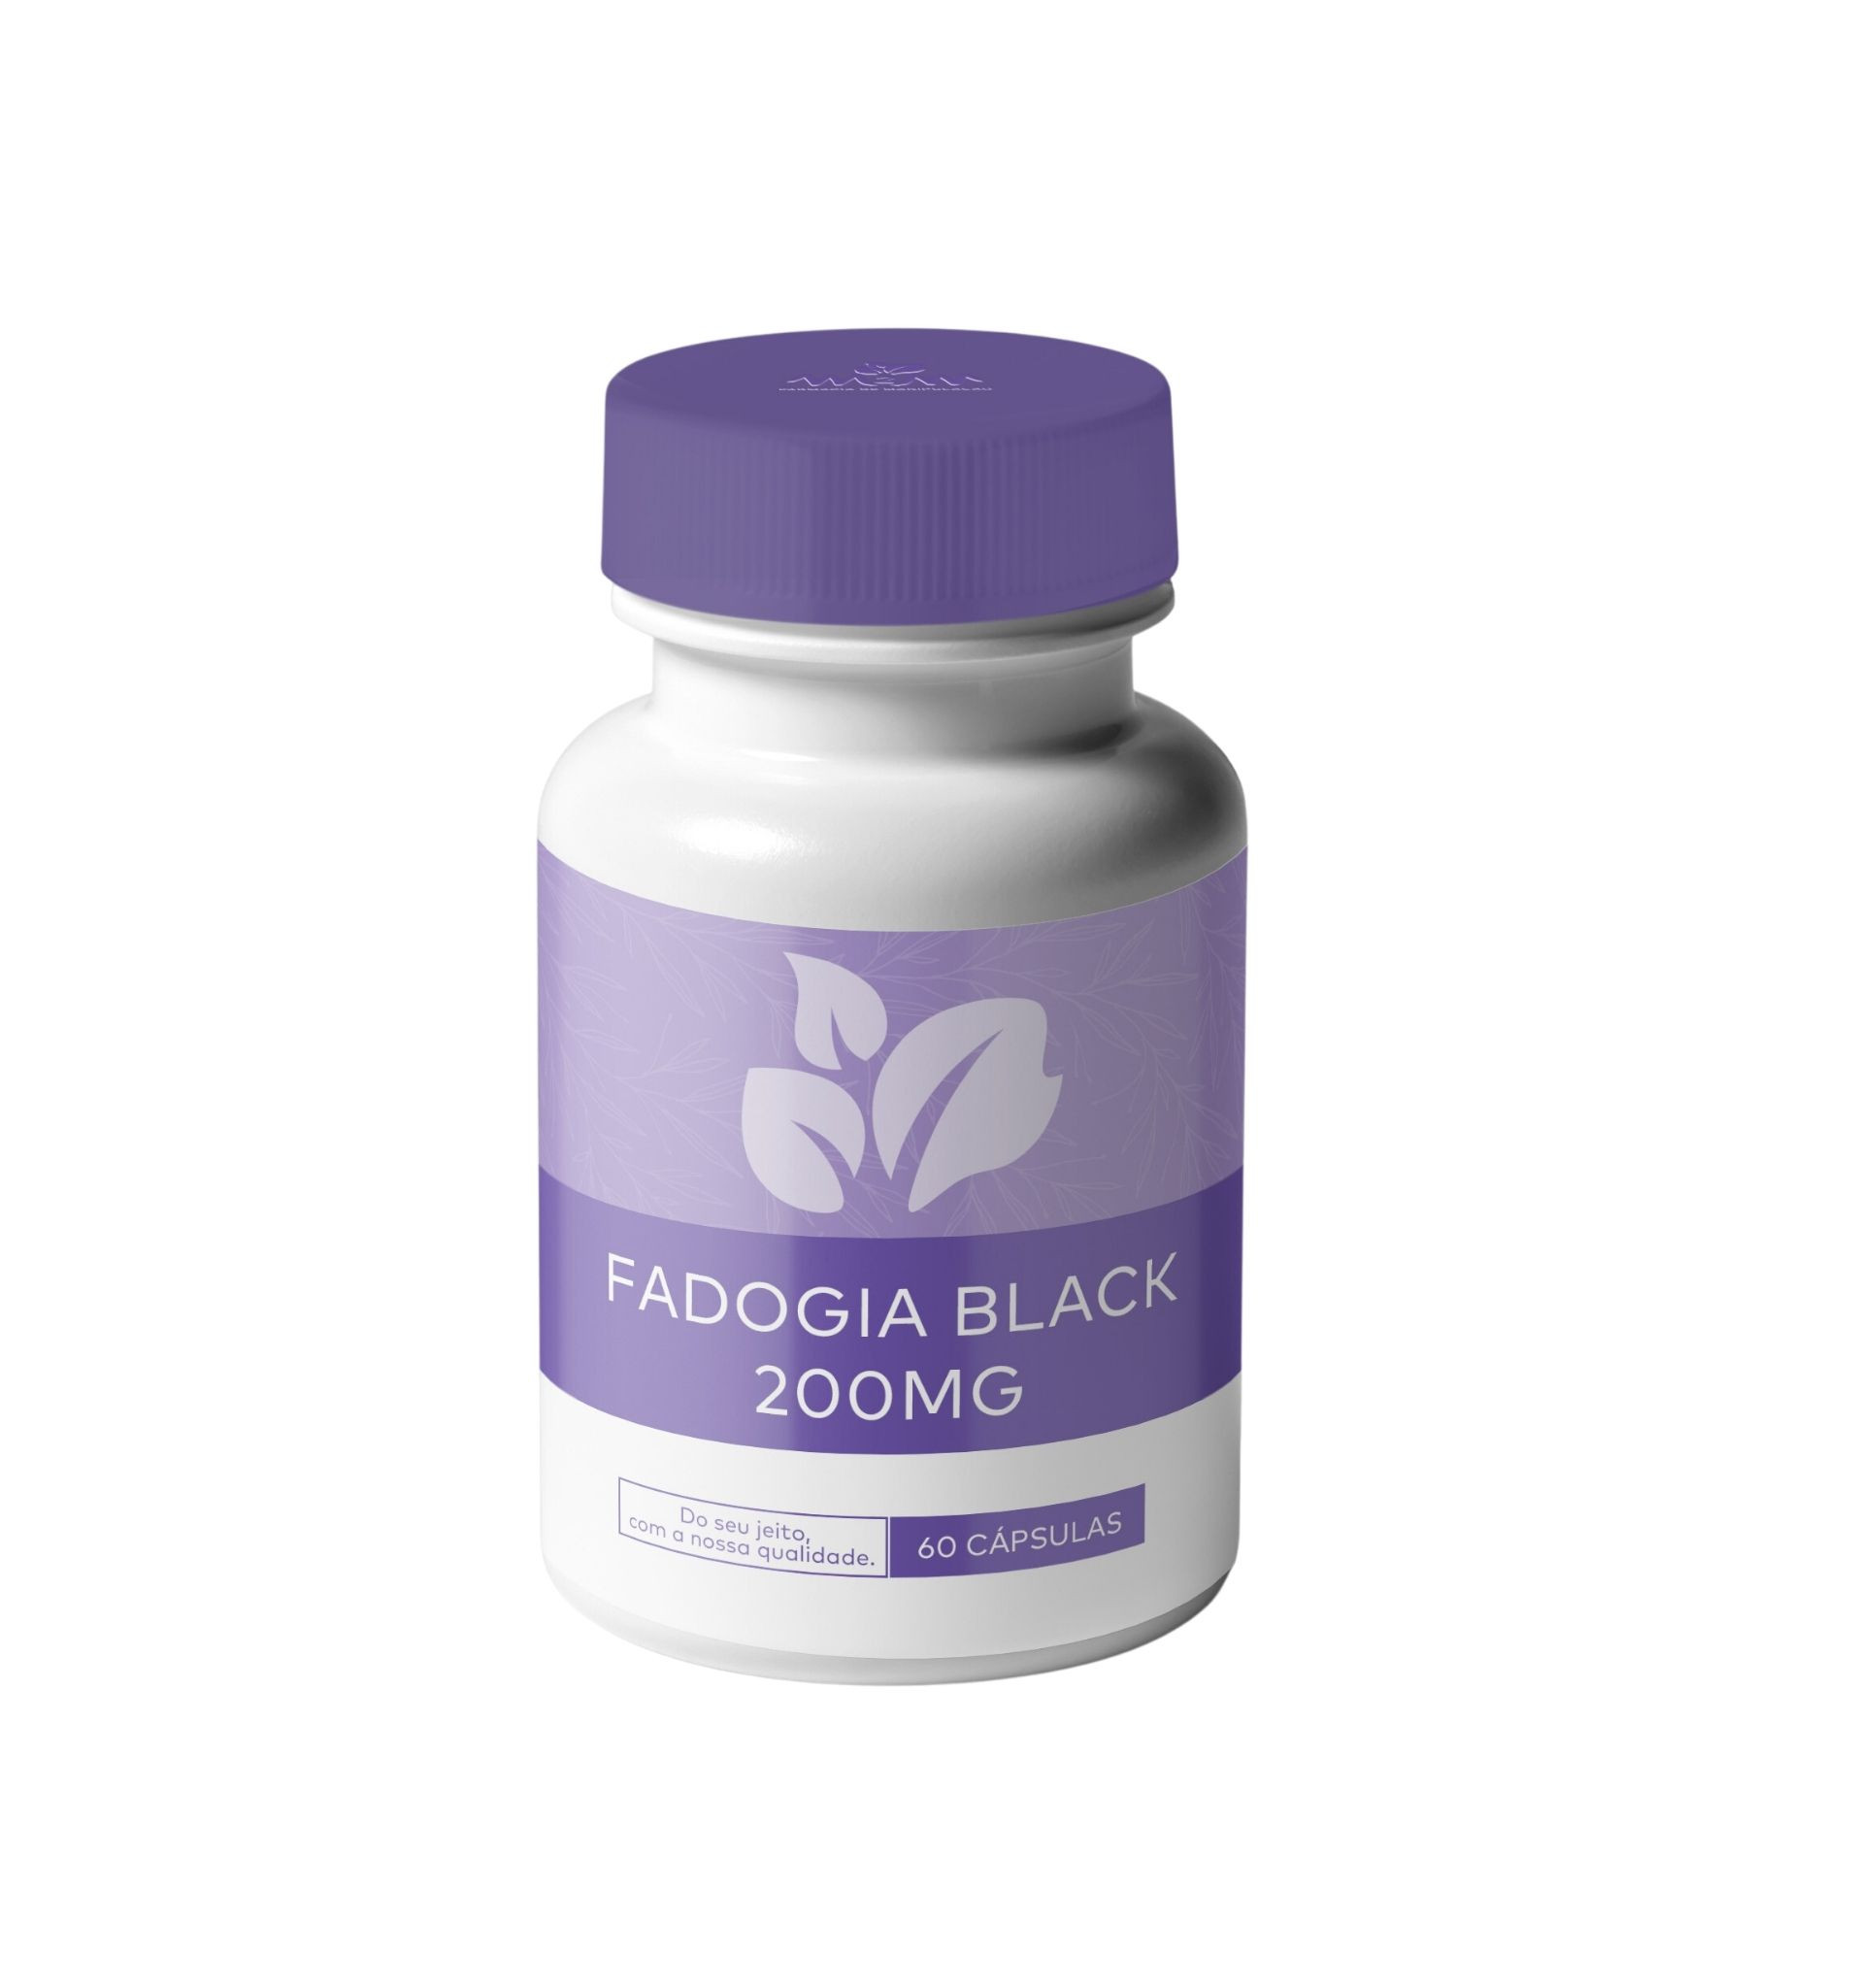 fadogia-black-200mg-60-capsulas